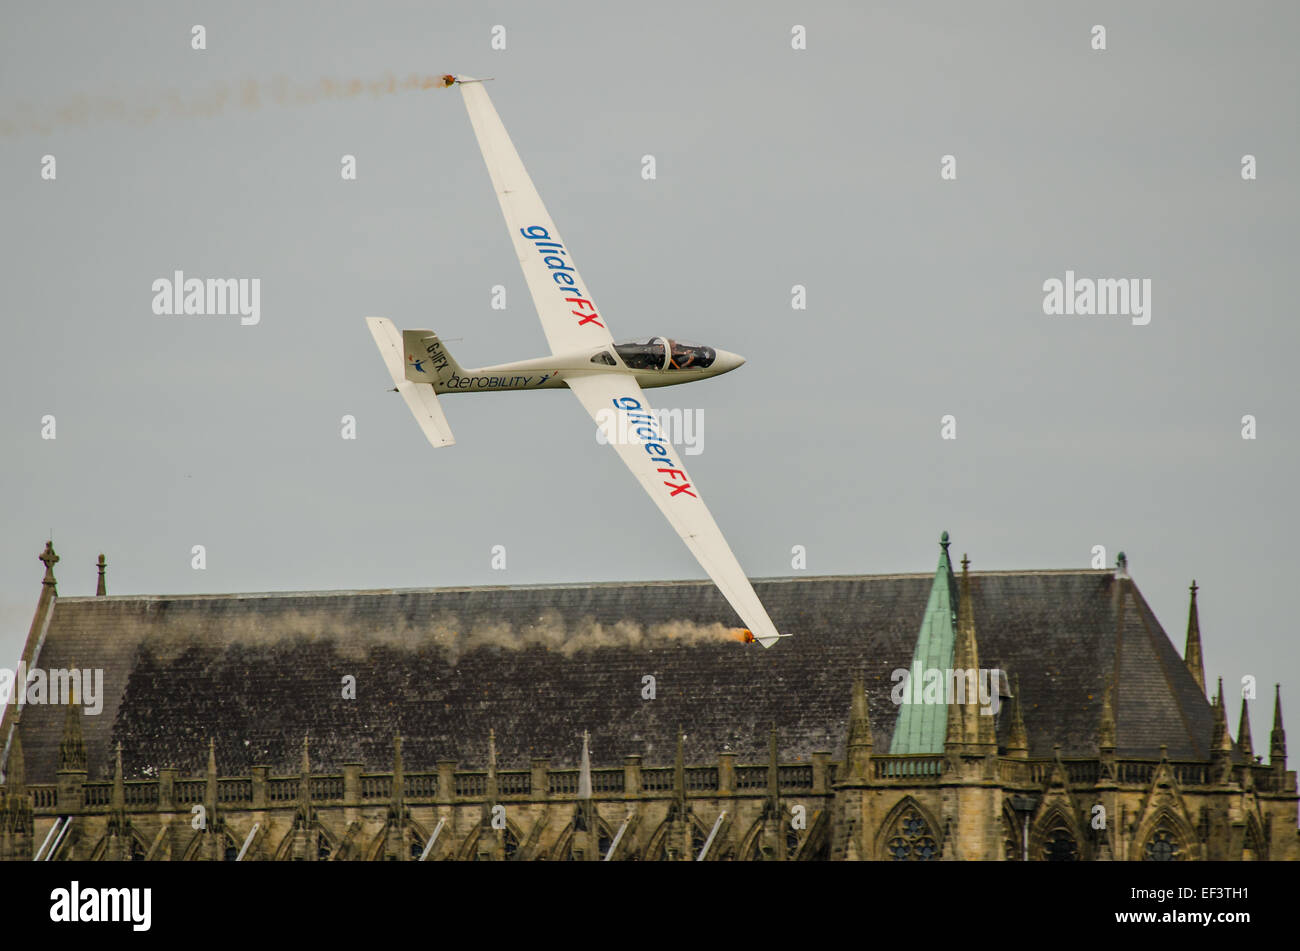 Un planeur acrobatique qui se trouve devant la chapelle du Lancing College, lors du spectacle aérien de Shoreham, au Royaume-Uni Banque D'Images